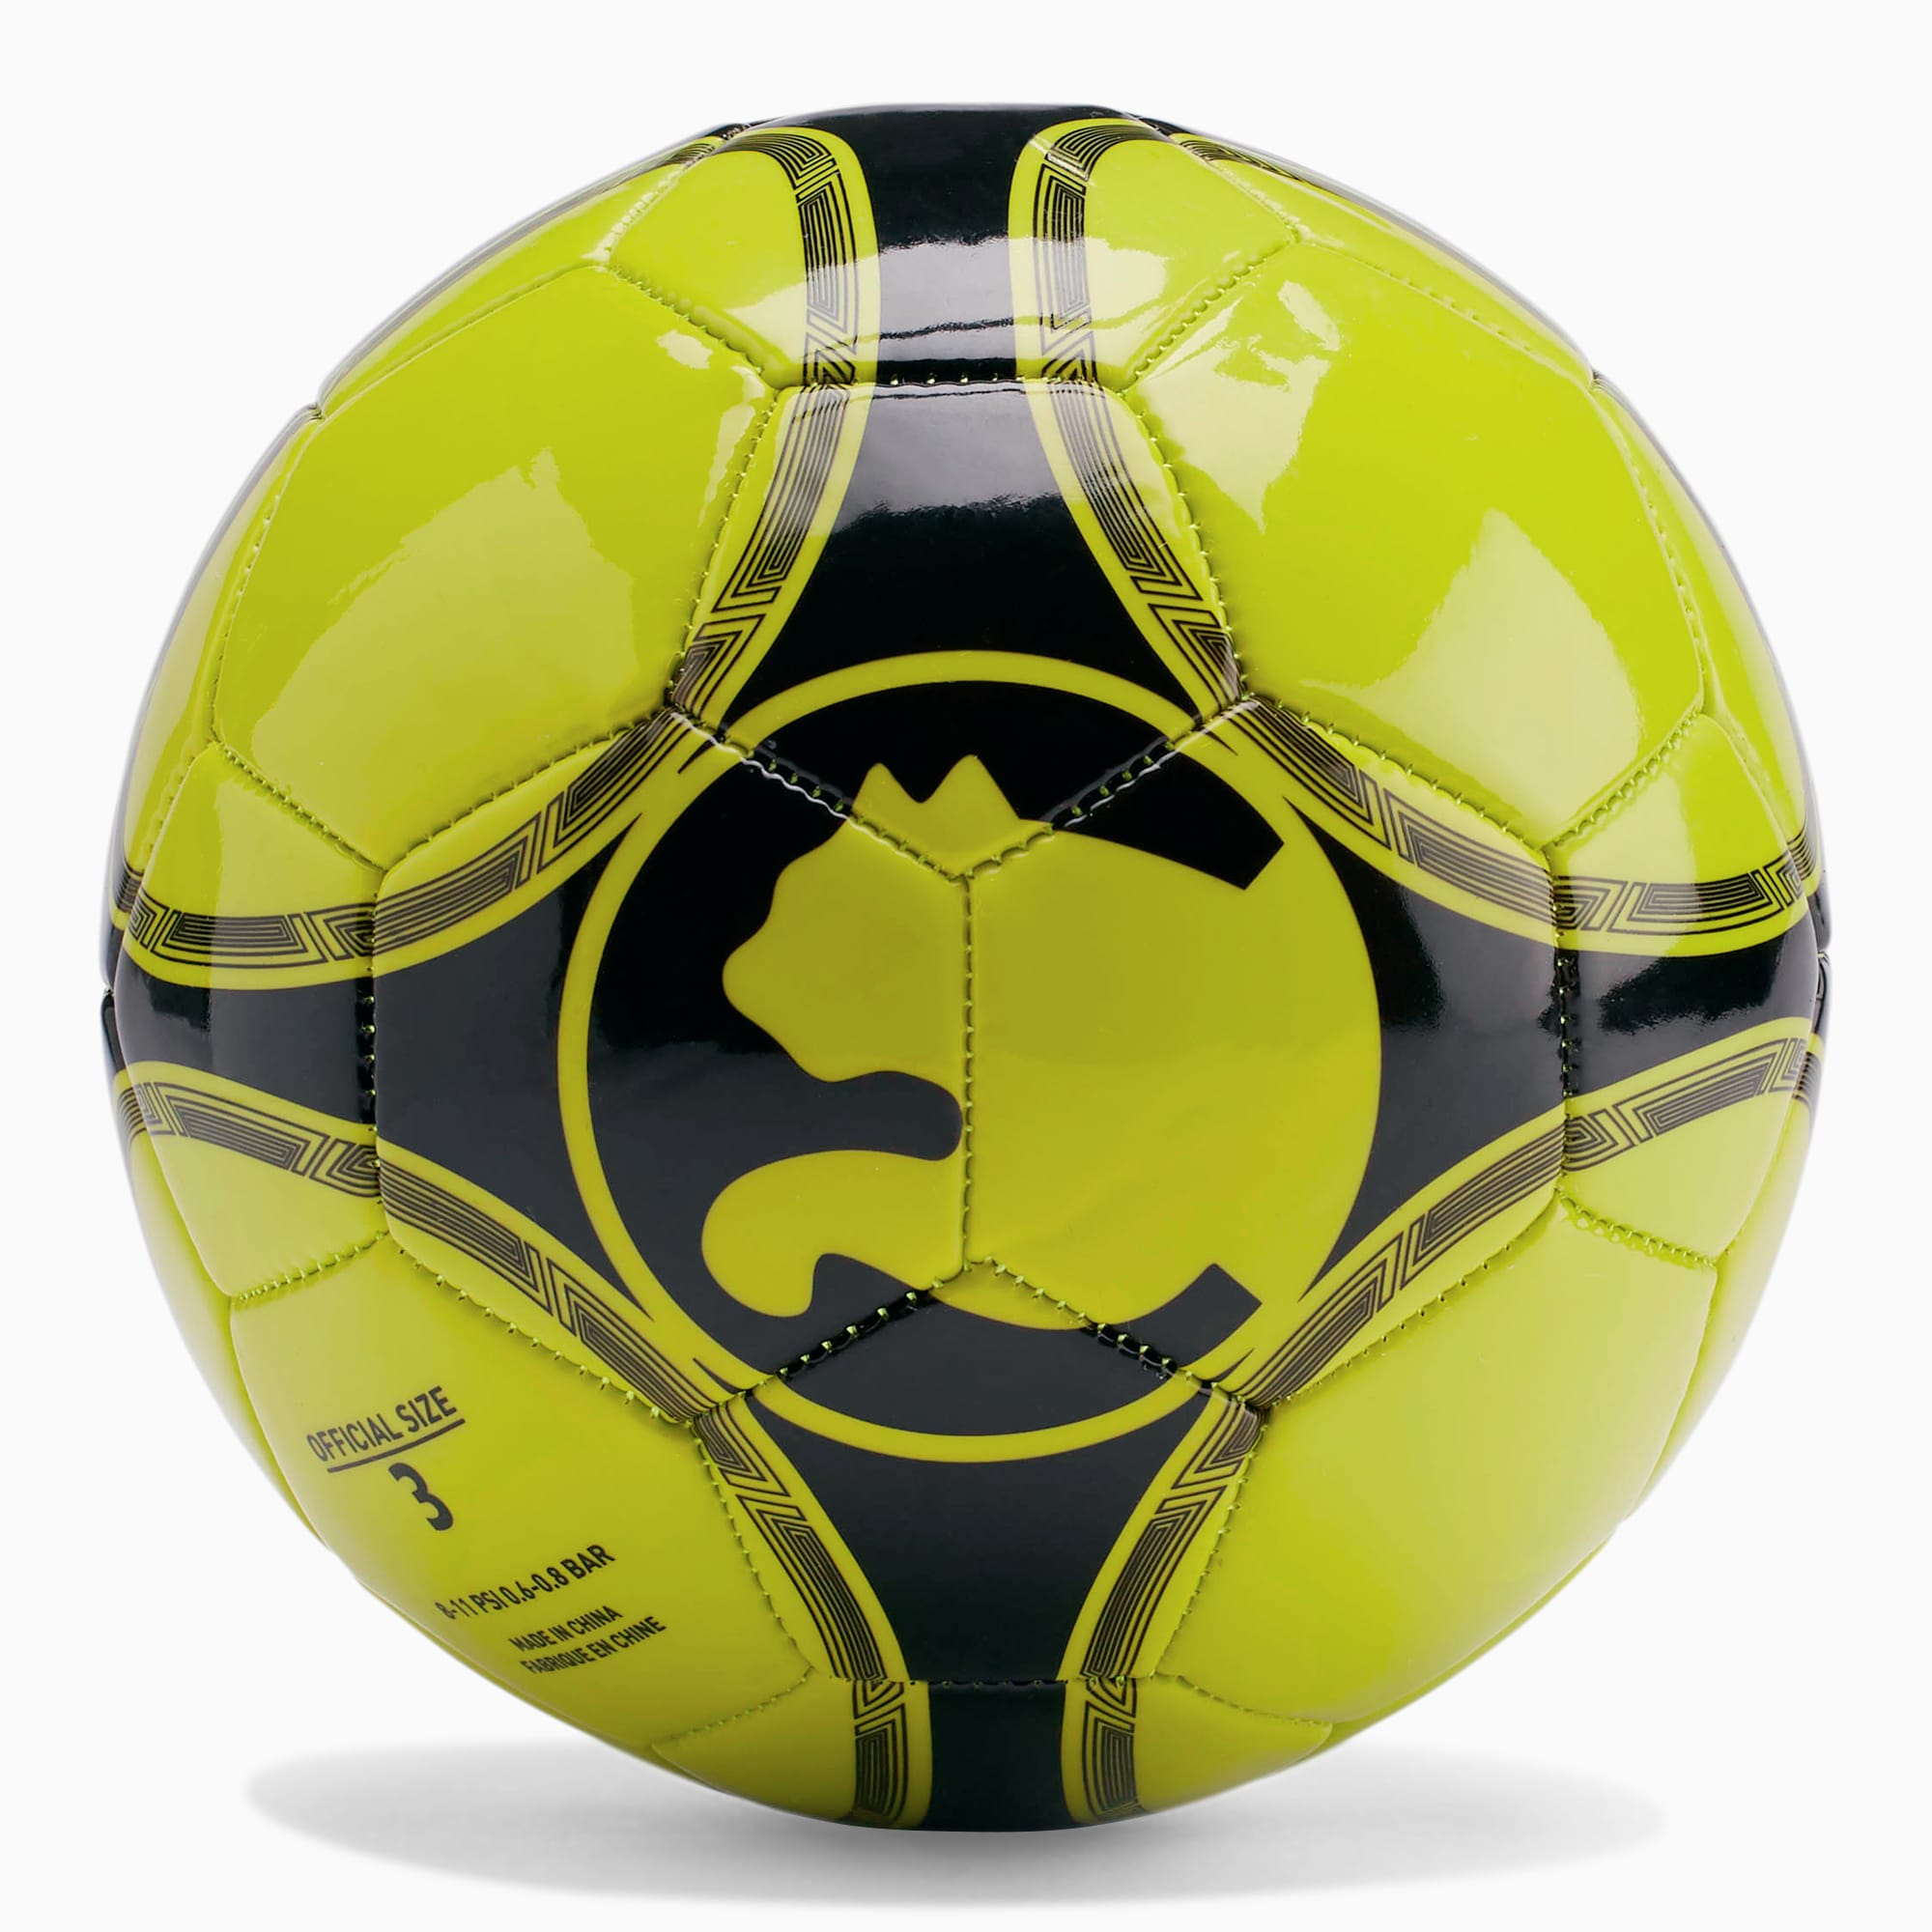 ProCat ProPass Soccer Ball | PUMA US